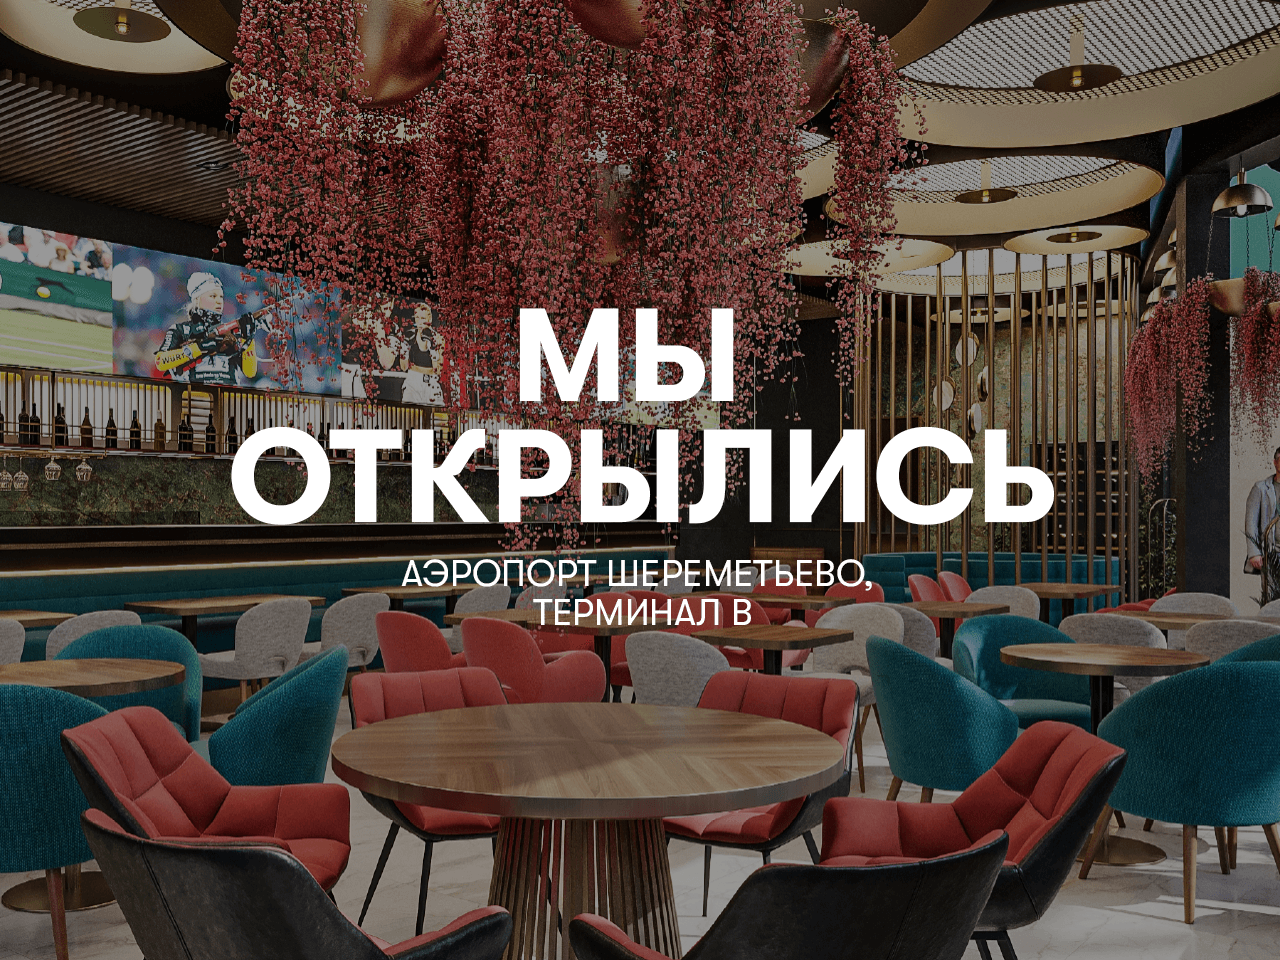 VASILCHUKÍ Chaihona №1 открывает двери нового ресторана в Международном аэропорту Шереметьево, терминал В